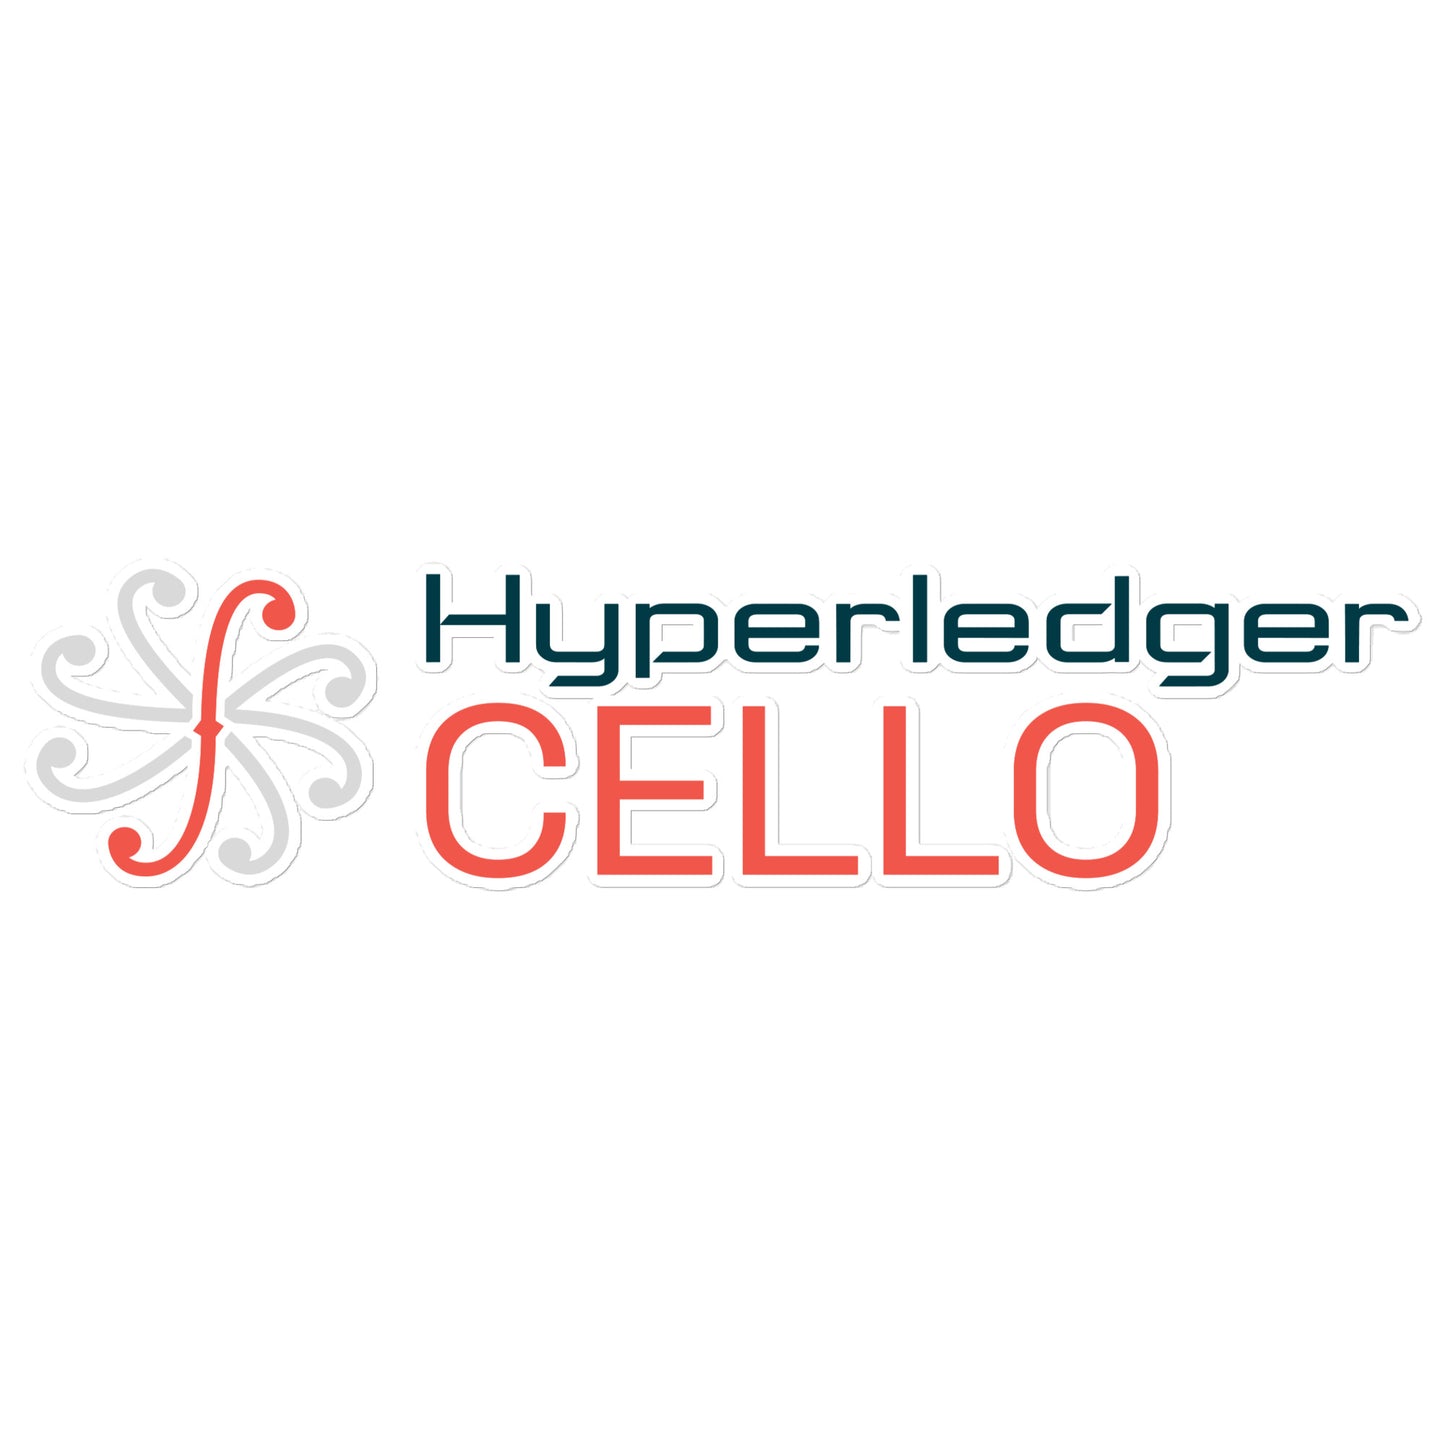 Hyperledger Cello